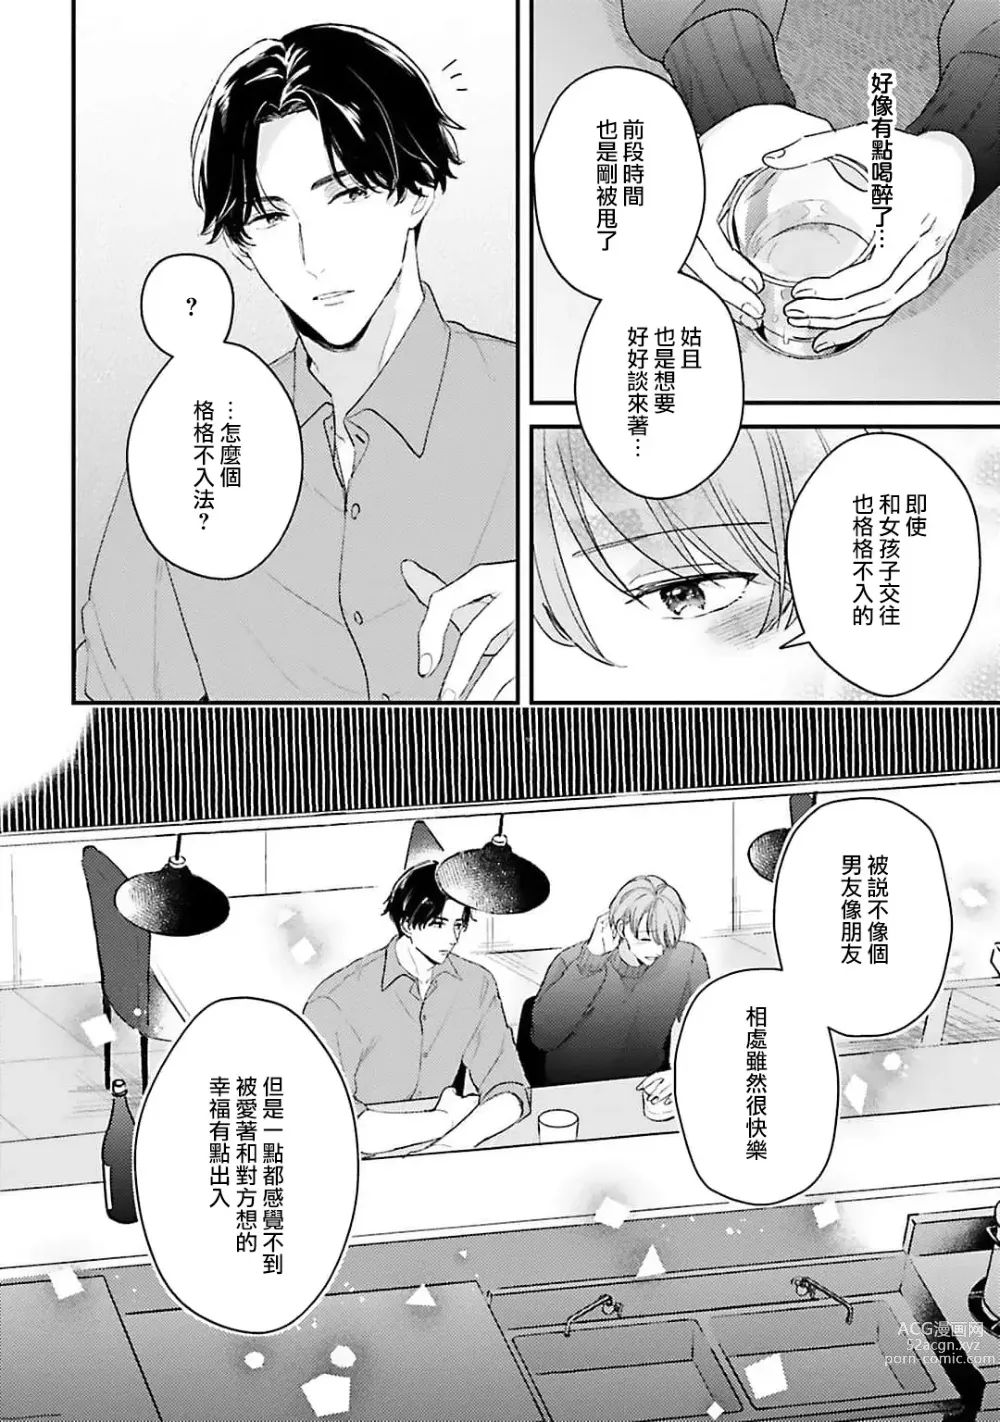 Page 21 of manga 绽放的恋爱皆为醉与甜1